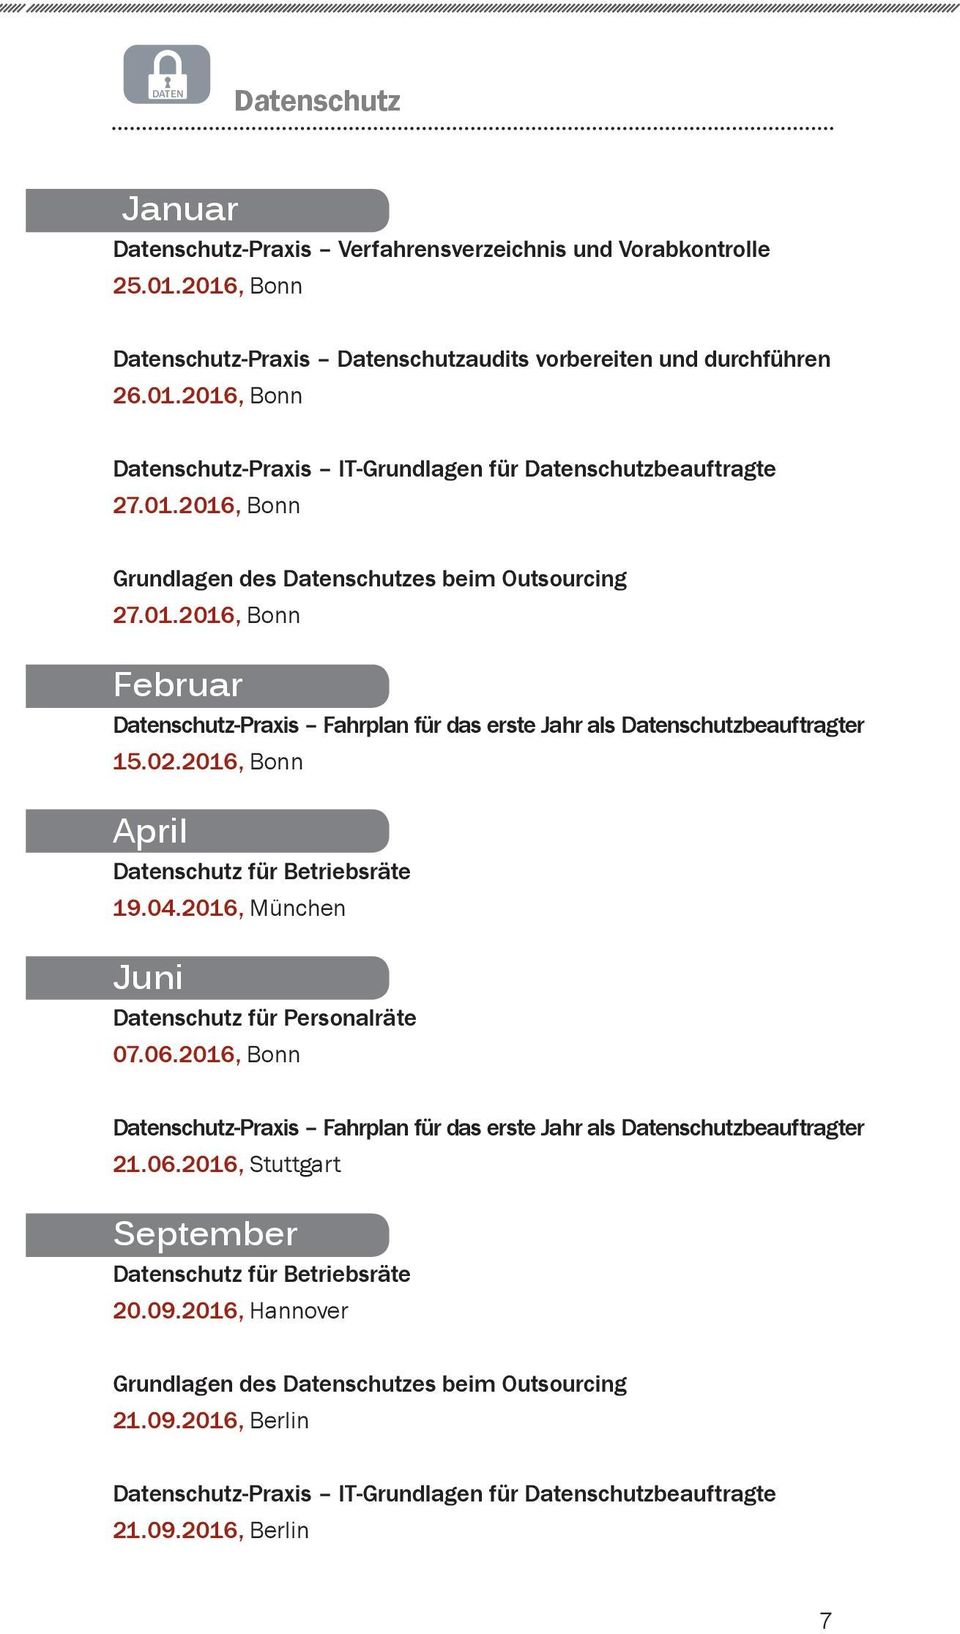 2016, Bonn April Datenschutz für Betriebsräte 19.04.2016, München Juni Datenschutz für Personalräte 07.06.2016, Bonn Datenschutz-Praxis Fahrplan für das erste Jahr als Datenschutzbeauftragter 21.06.2016, Stuttgart September Datenschutz für Betriebsräte 20.